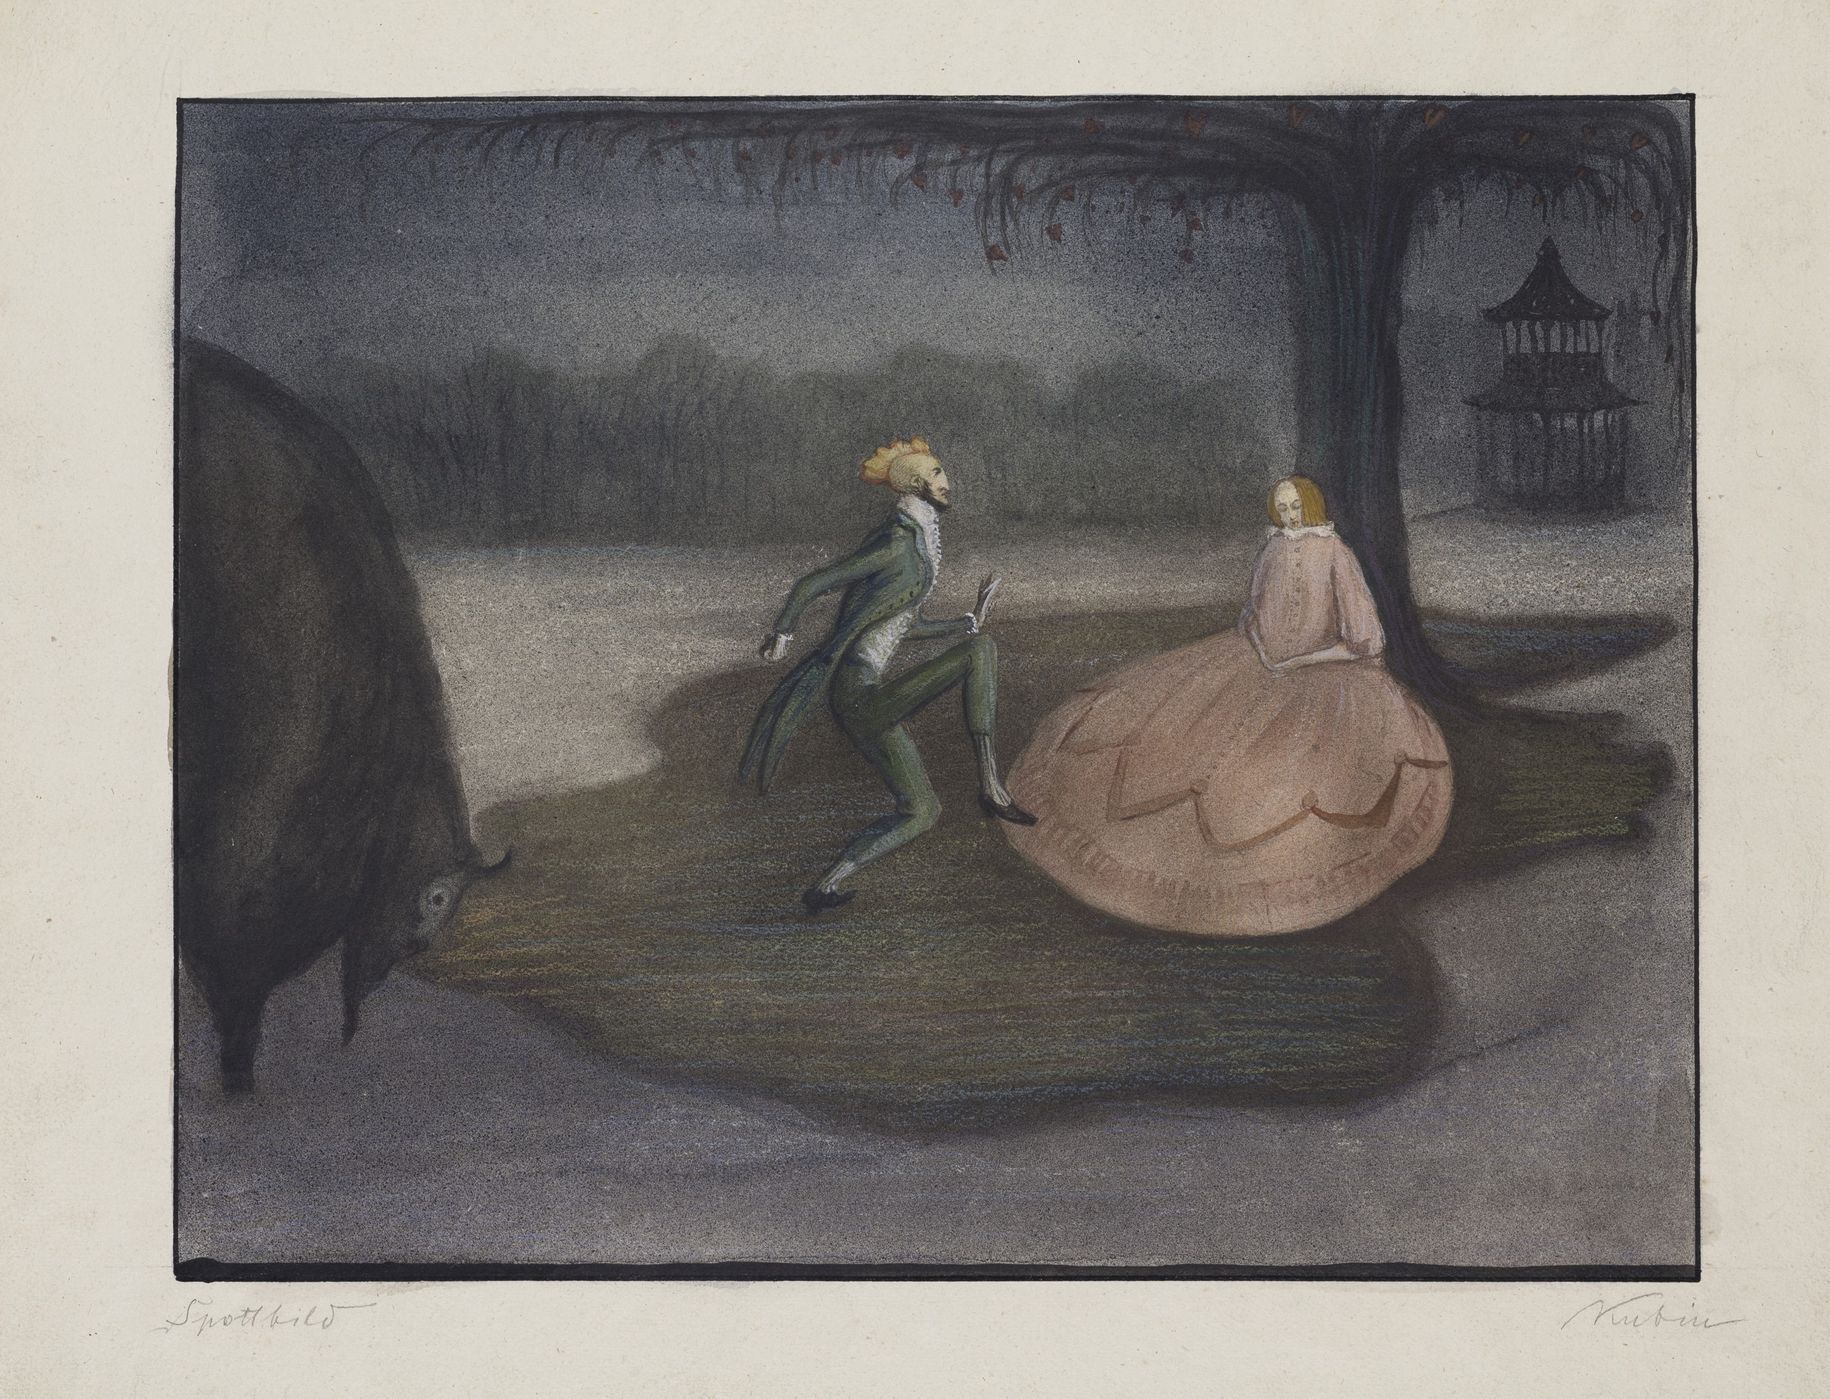 Alfred Kubin: Zesměšňující výjev, 1903